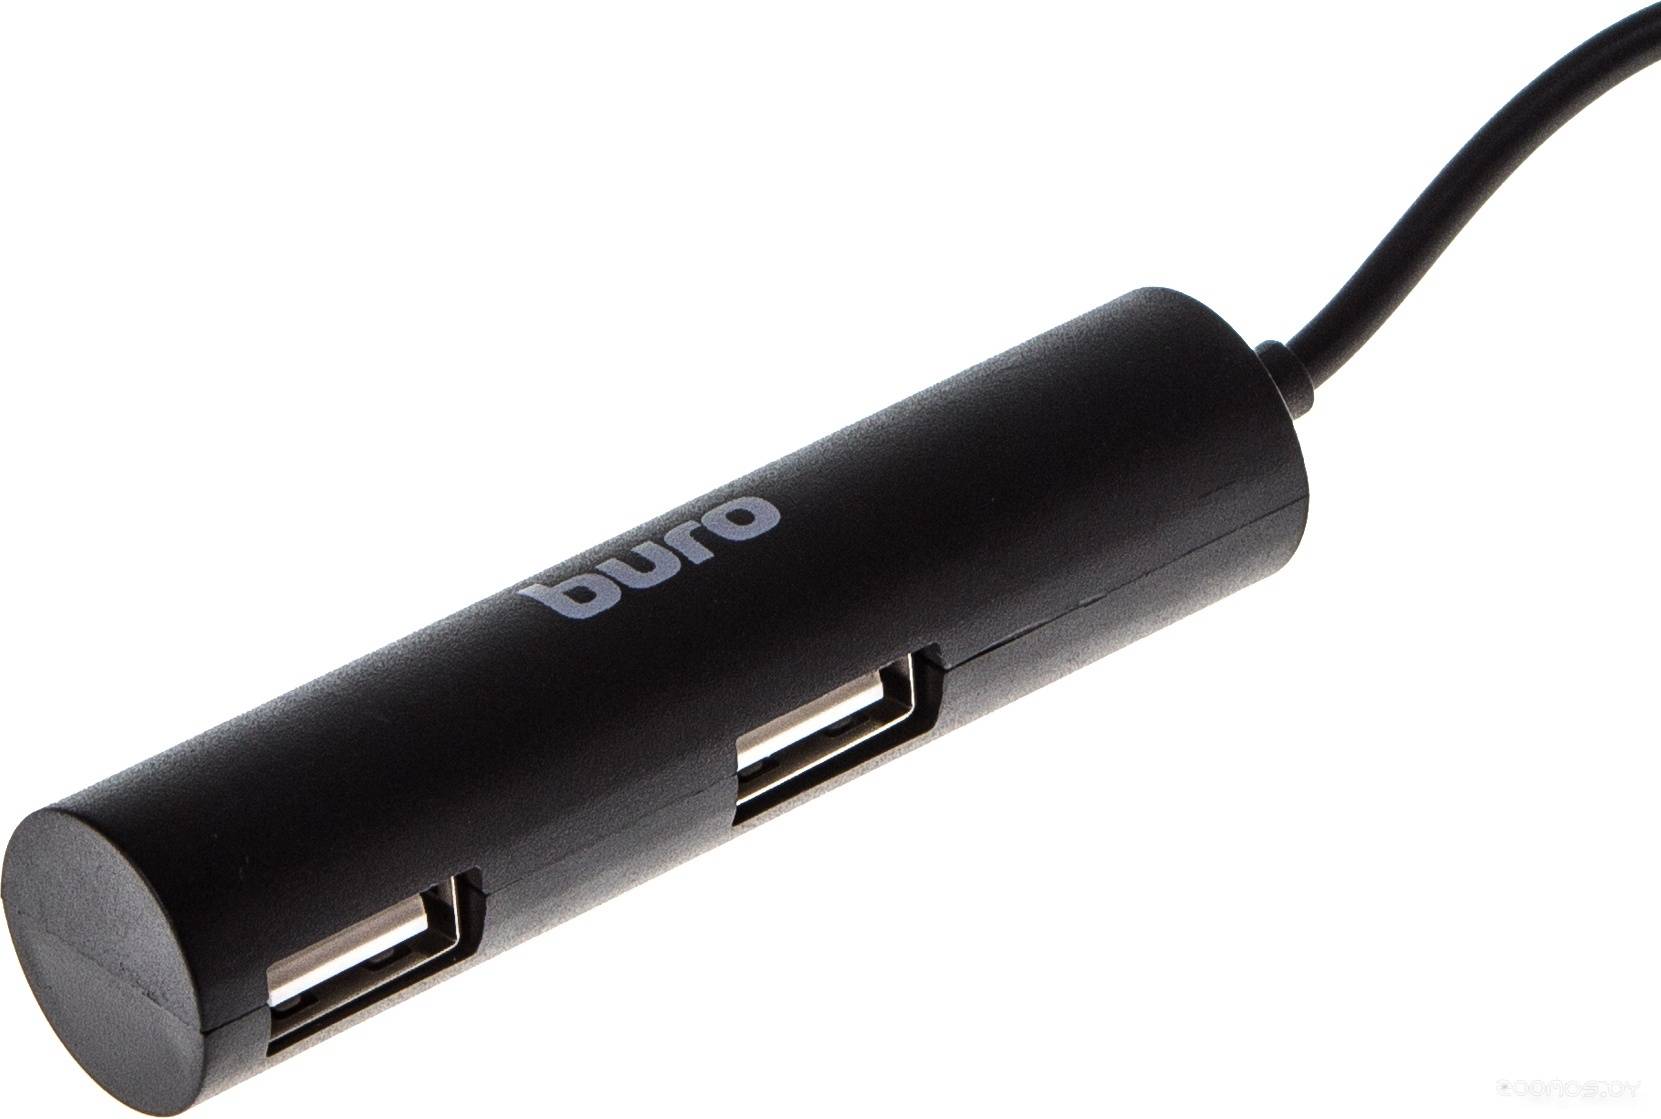 USB- Buro BU-HUB4-0.5R-U2.0     